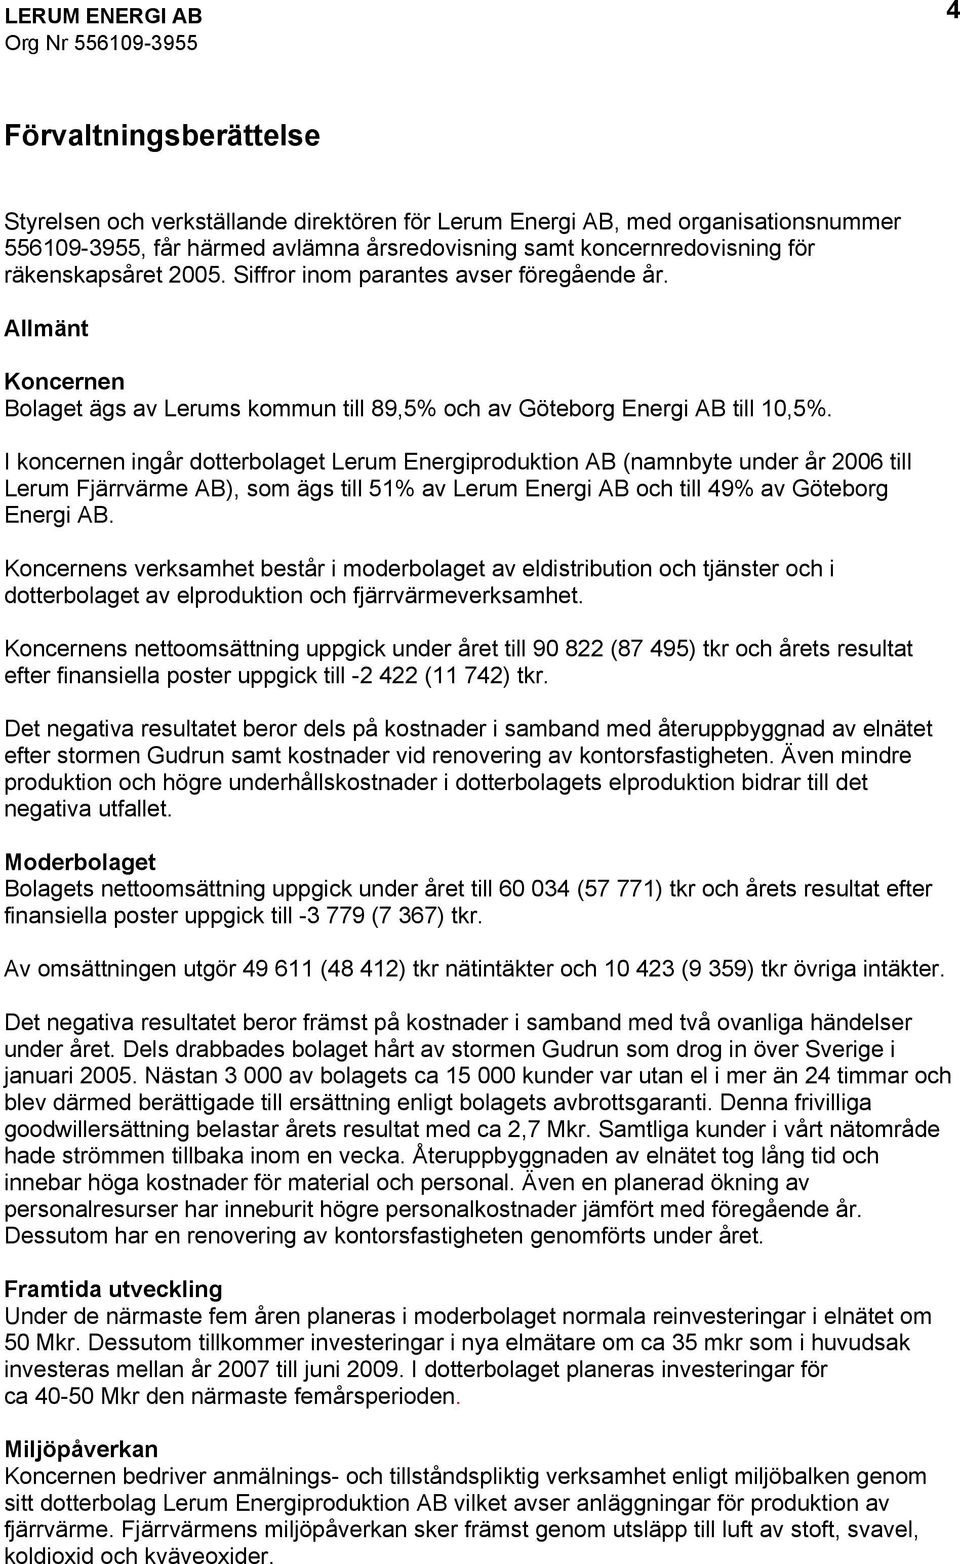 I koncernen ingår dotterbolaget Lerum Energiproduktion AB (namnbyte under år 2006 till Lerum Fjärrvärme AB), som ägs till 51% av Lerum Energi AB och till 49% av Göteborg Energi AB.